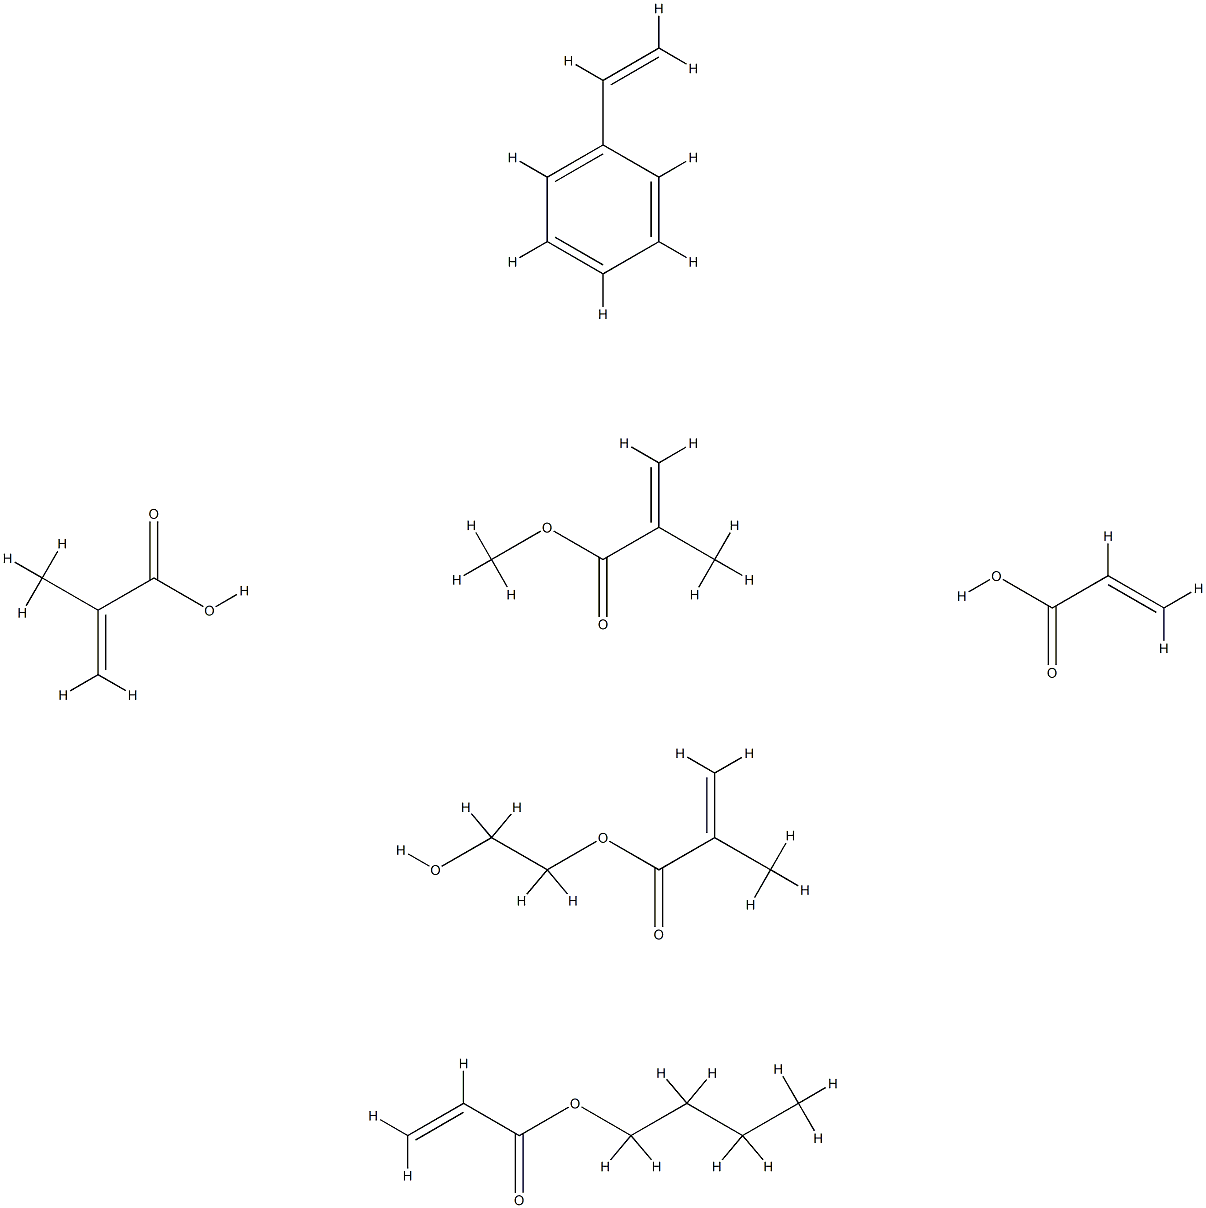 2-프로펜산,2-메틸-,부틸2-프로페노에이트,에테닐벤젠,2-하이드록시에틸2-메틸-2-프로페노에이트,메틸2-메틸-2-프로페노에이트및2-프로펜산과의중합체 구조식 이미지